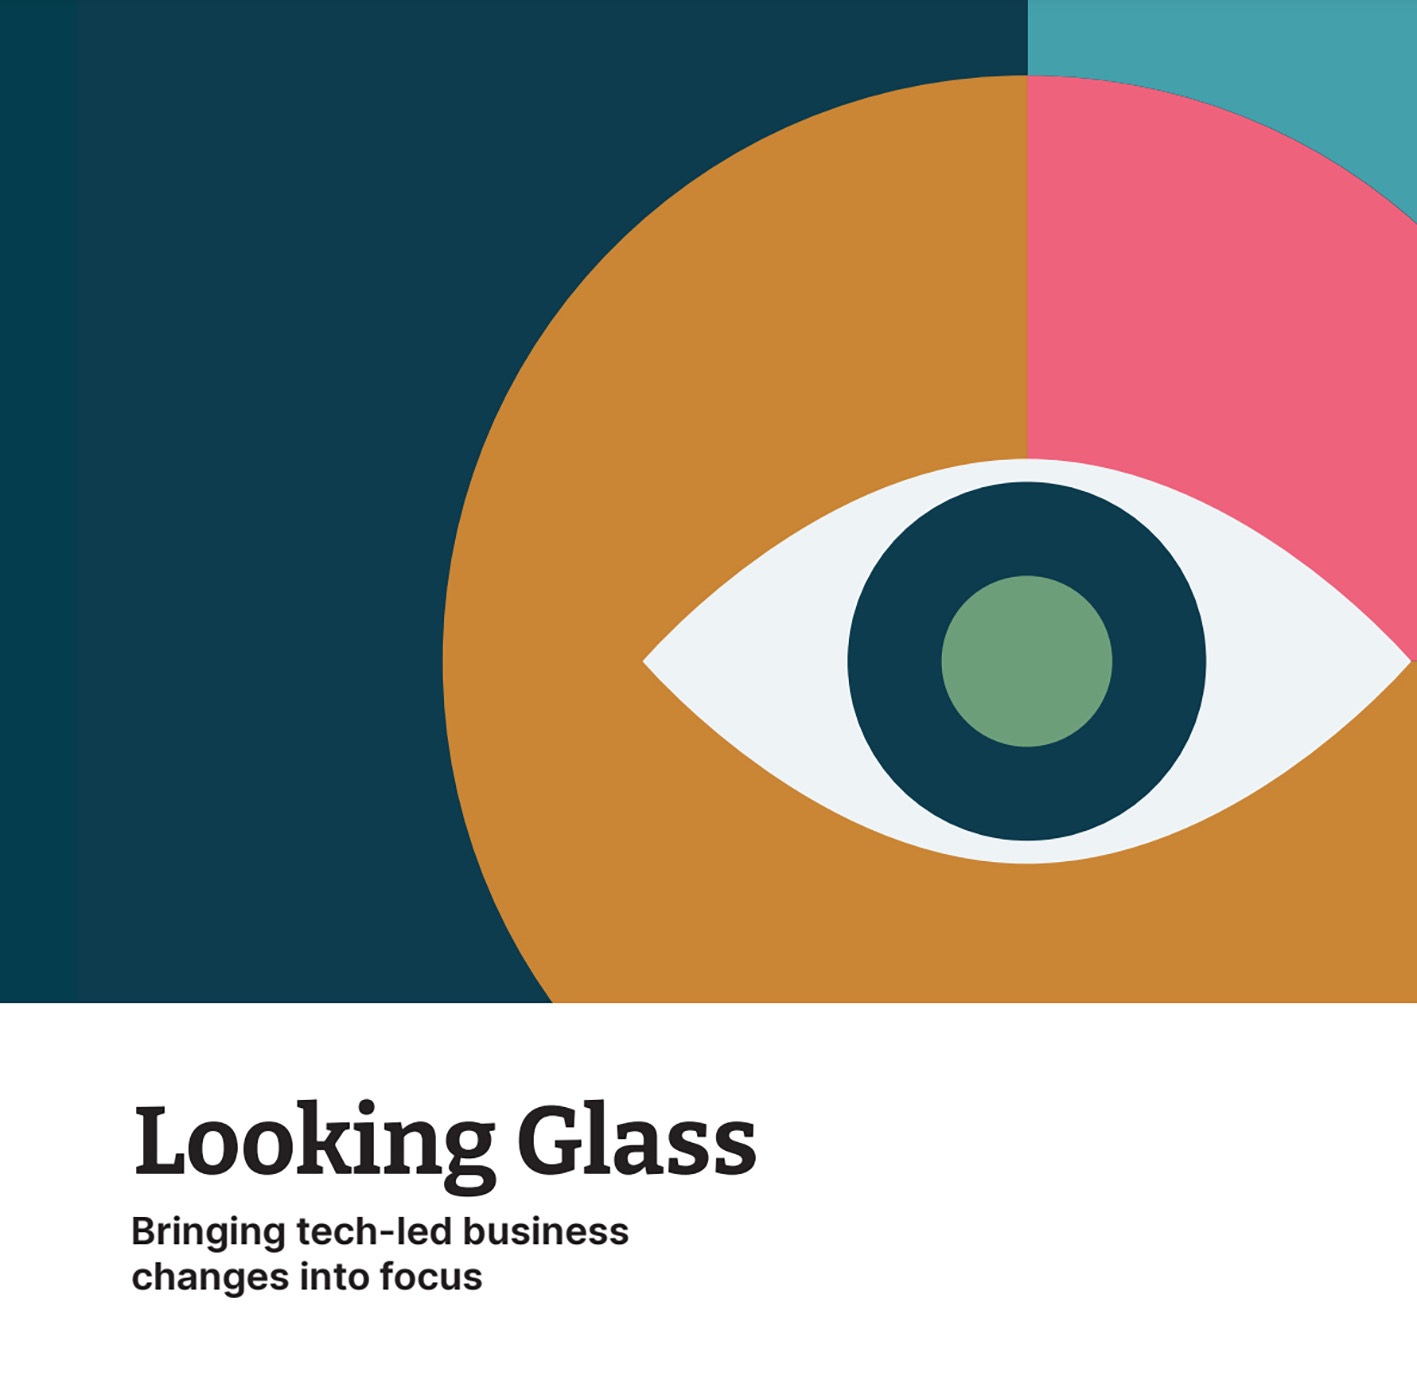 รายงาน Looking Glass ฉบับล่าสุดของ Thoughtworks เผยการใช้ และพัฒนาเทคโนโลยีต้องคำนึงถึงจริยธรรม